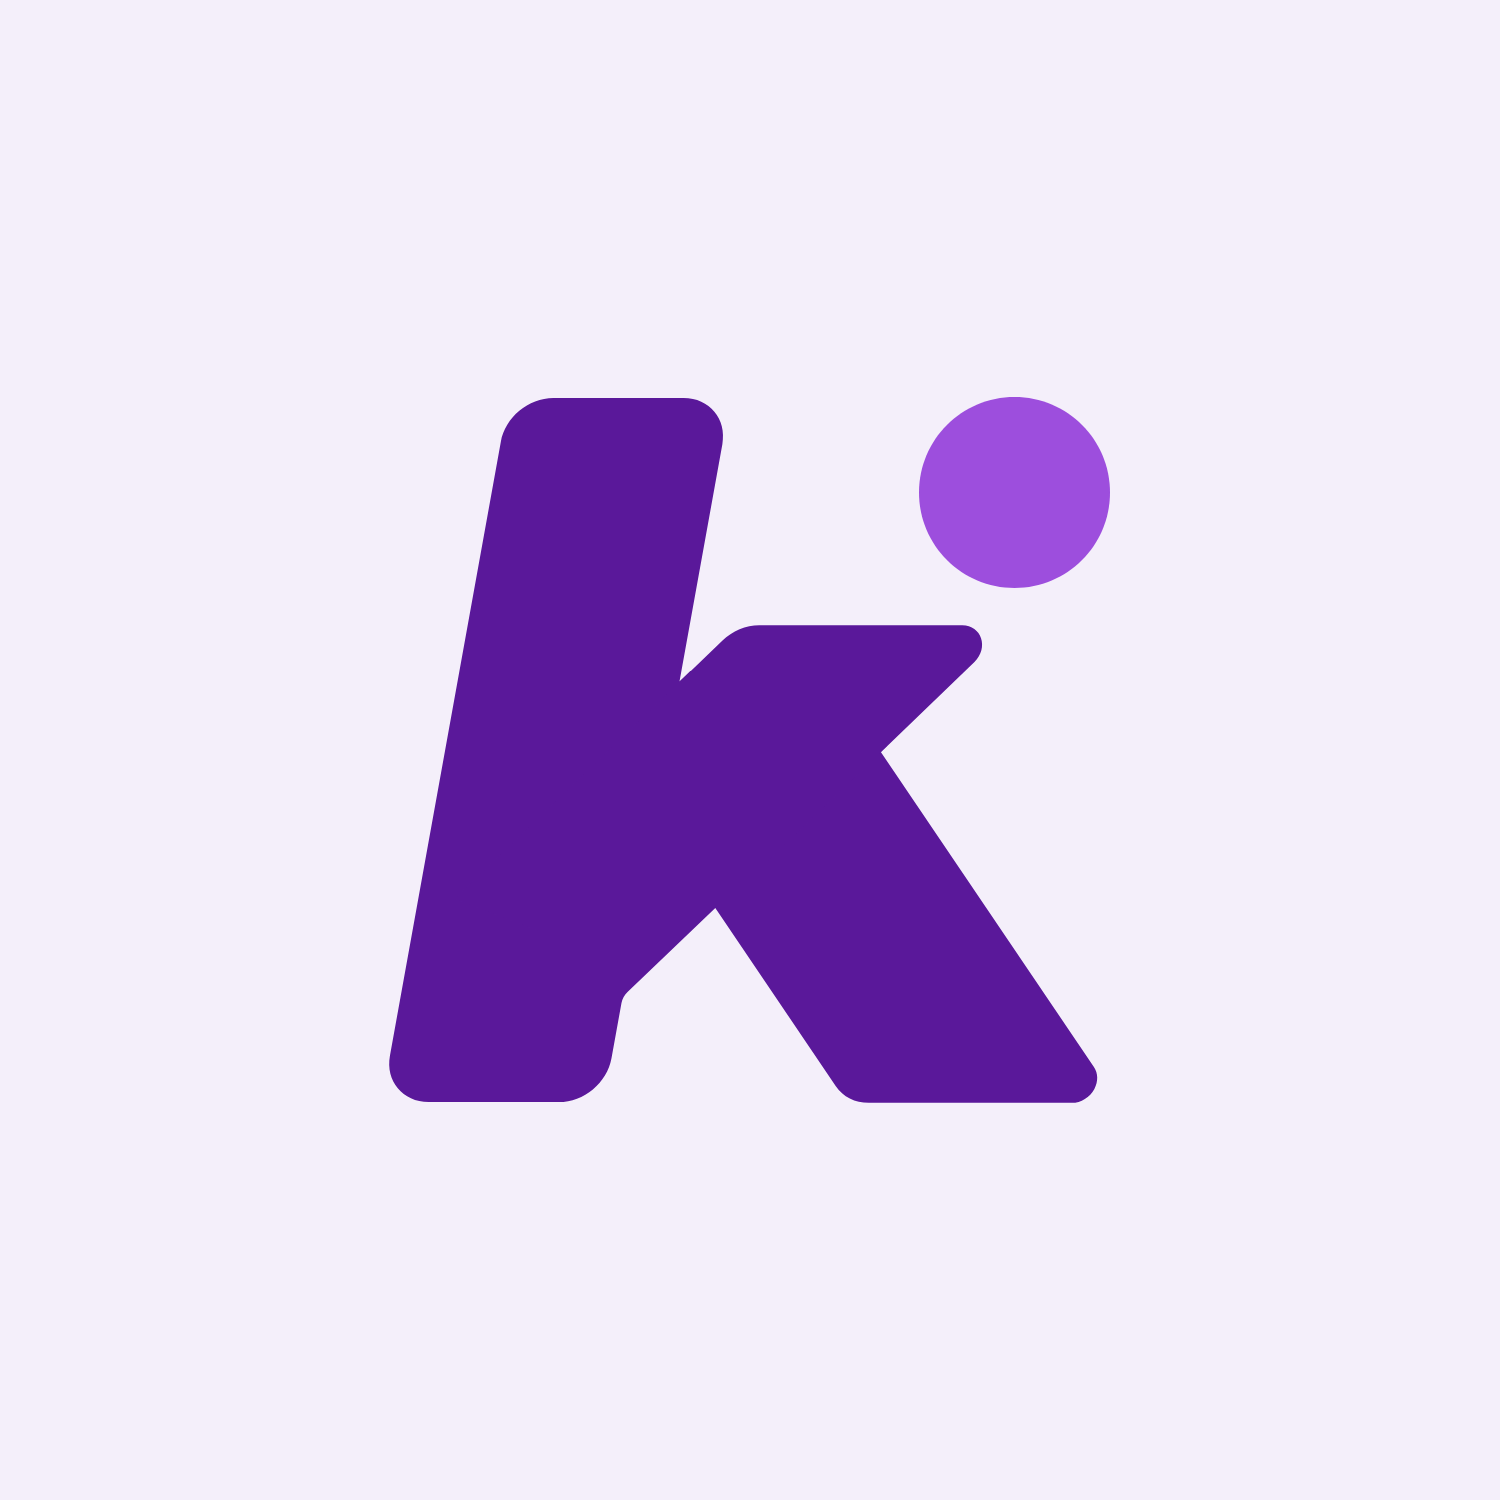 Knoiz logo